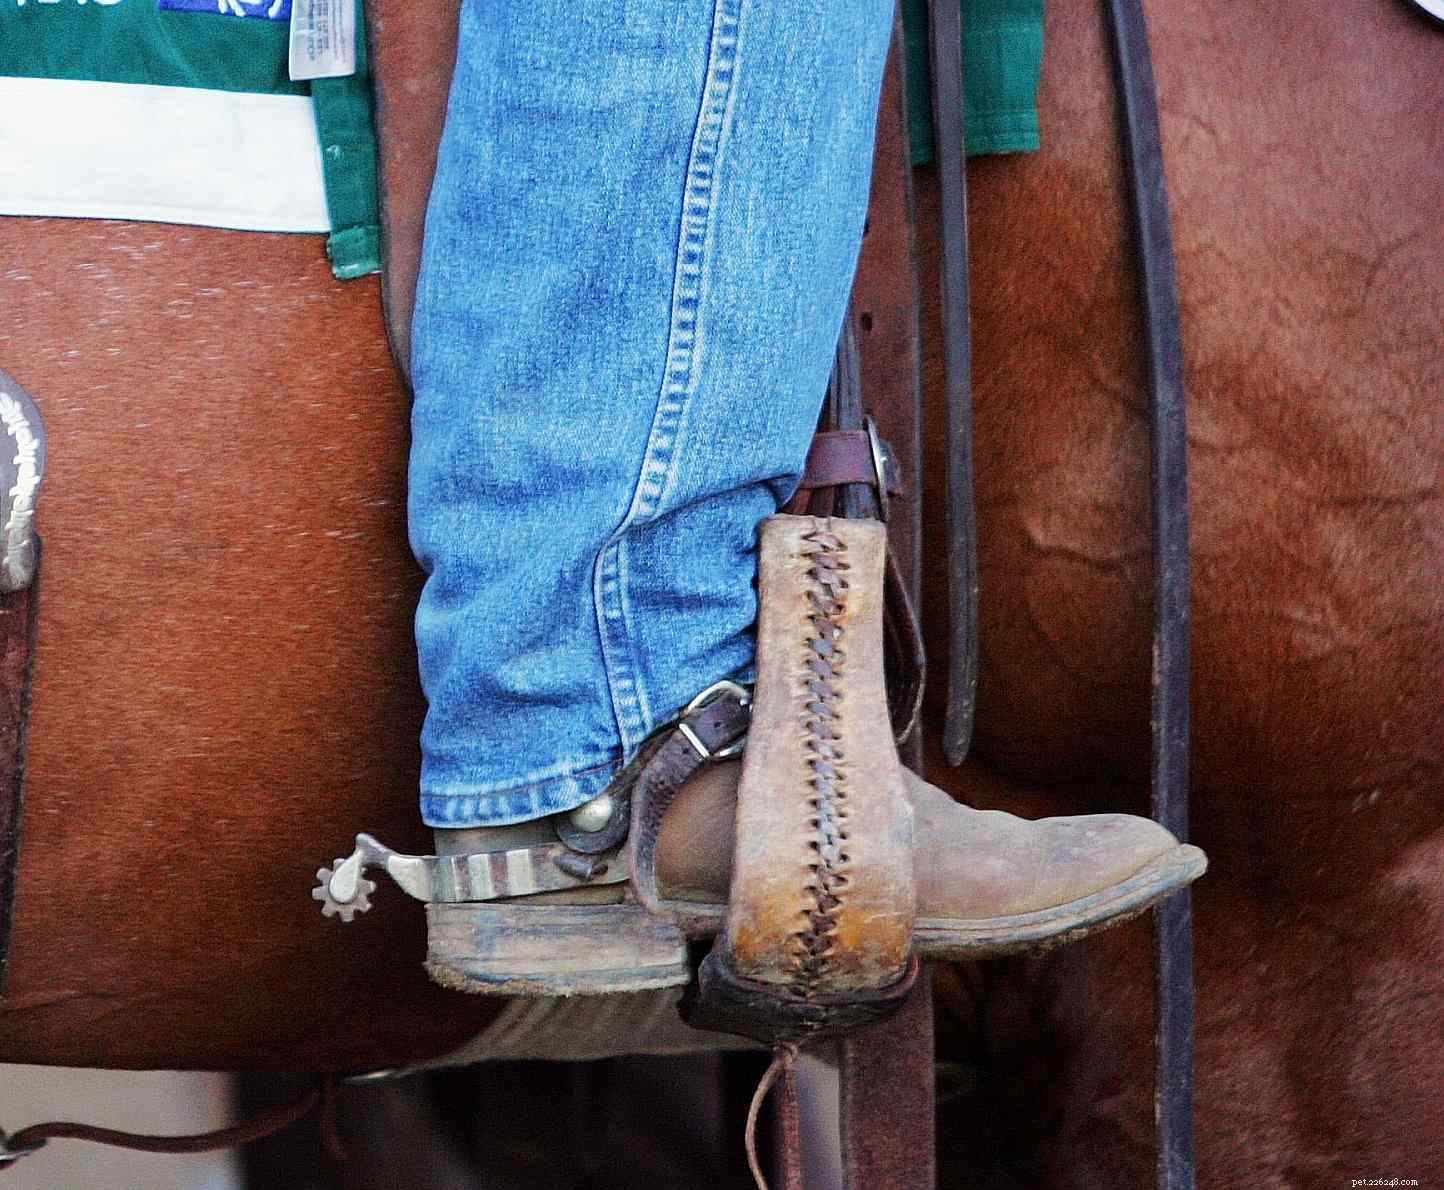 Trestání svého koně – co funguje a co nefunguje